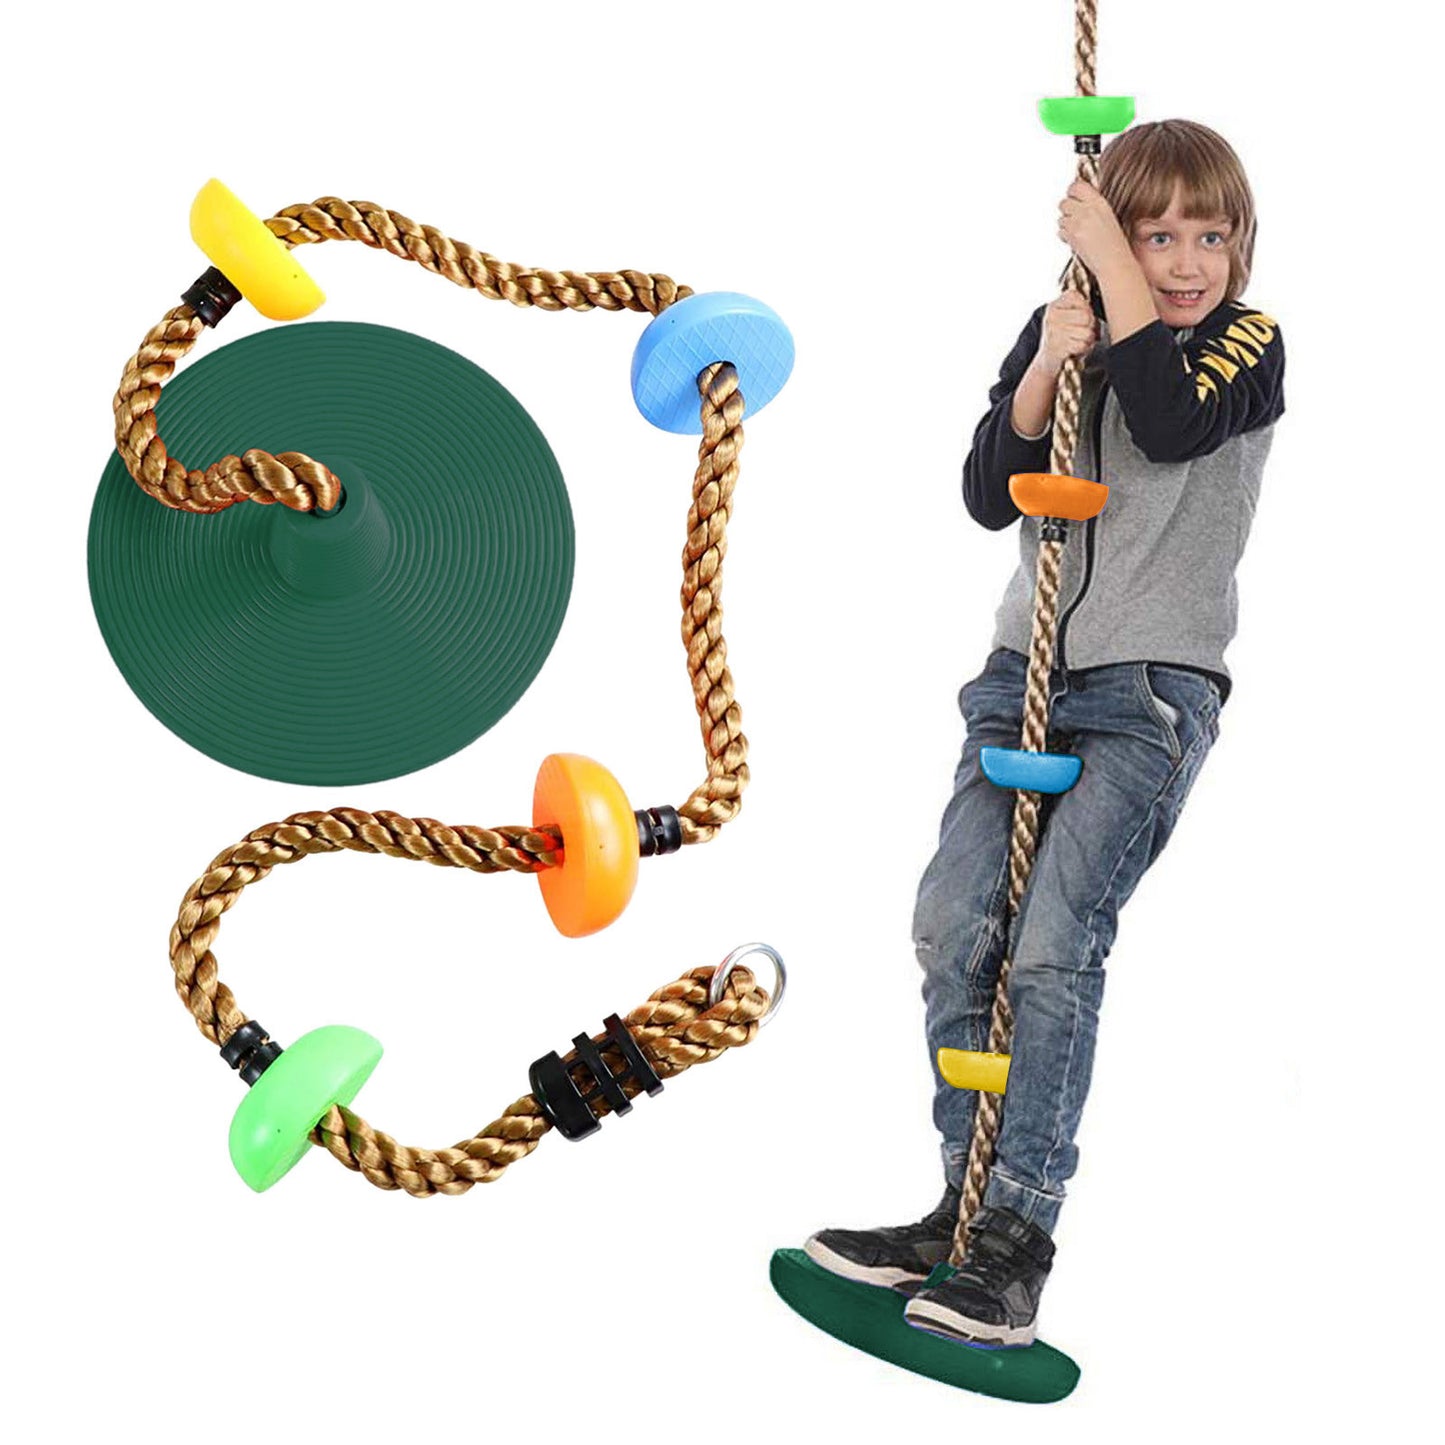 Plastic Children's Swing Play Equipment Outdoor  Kid Toy  Set Accessories